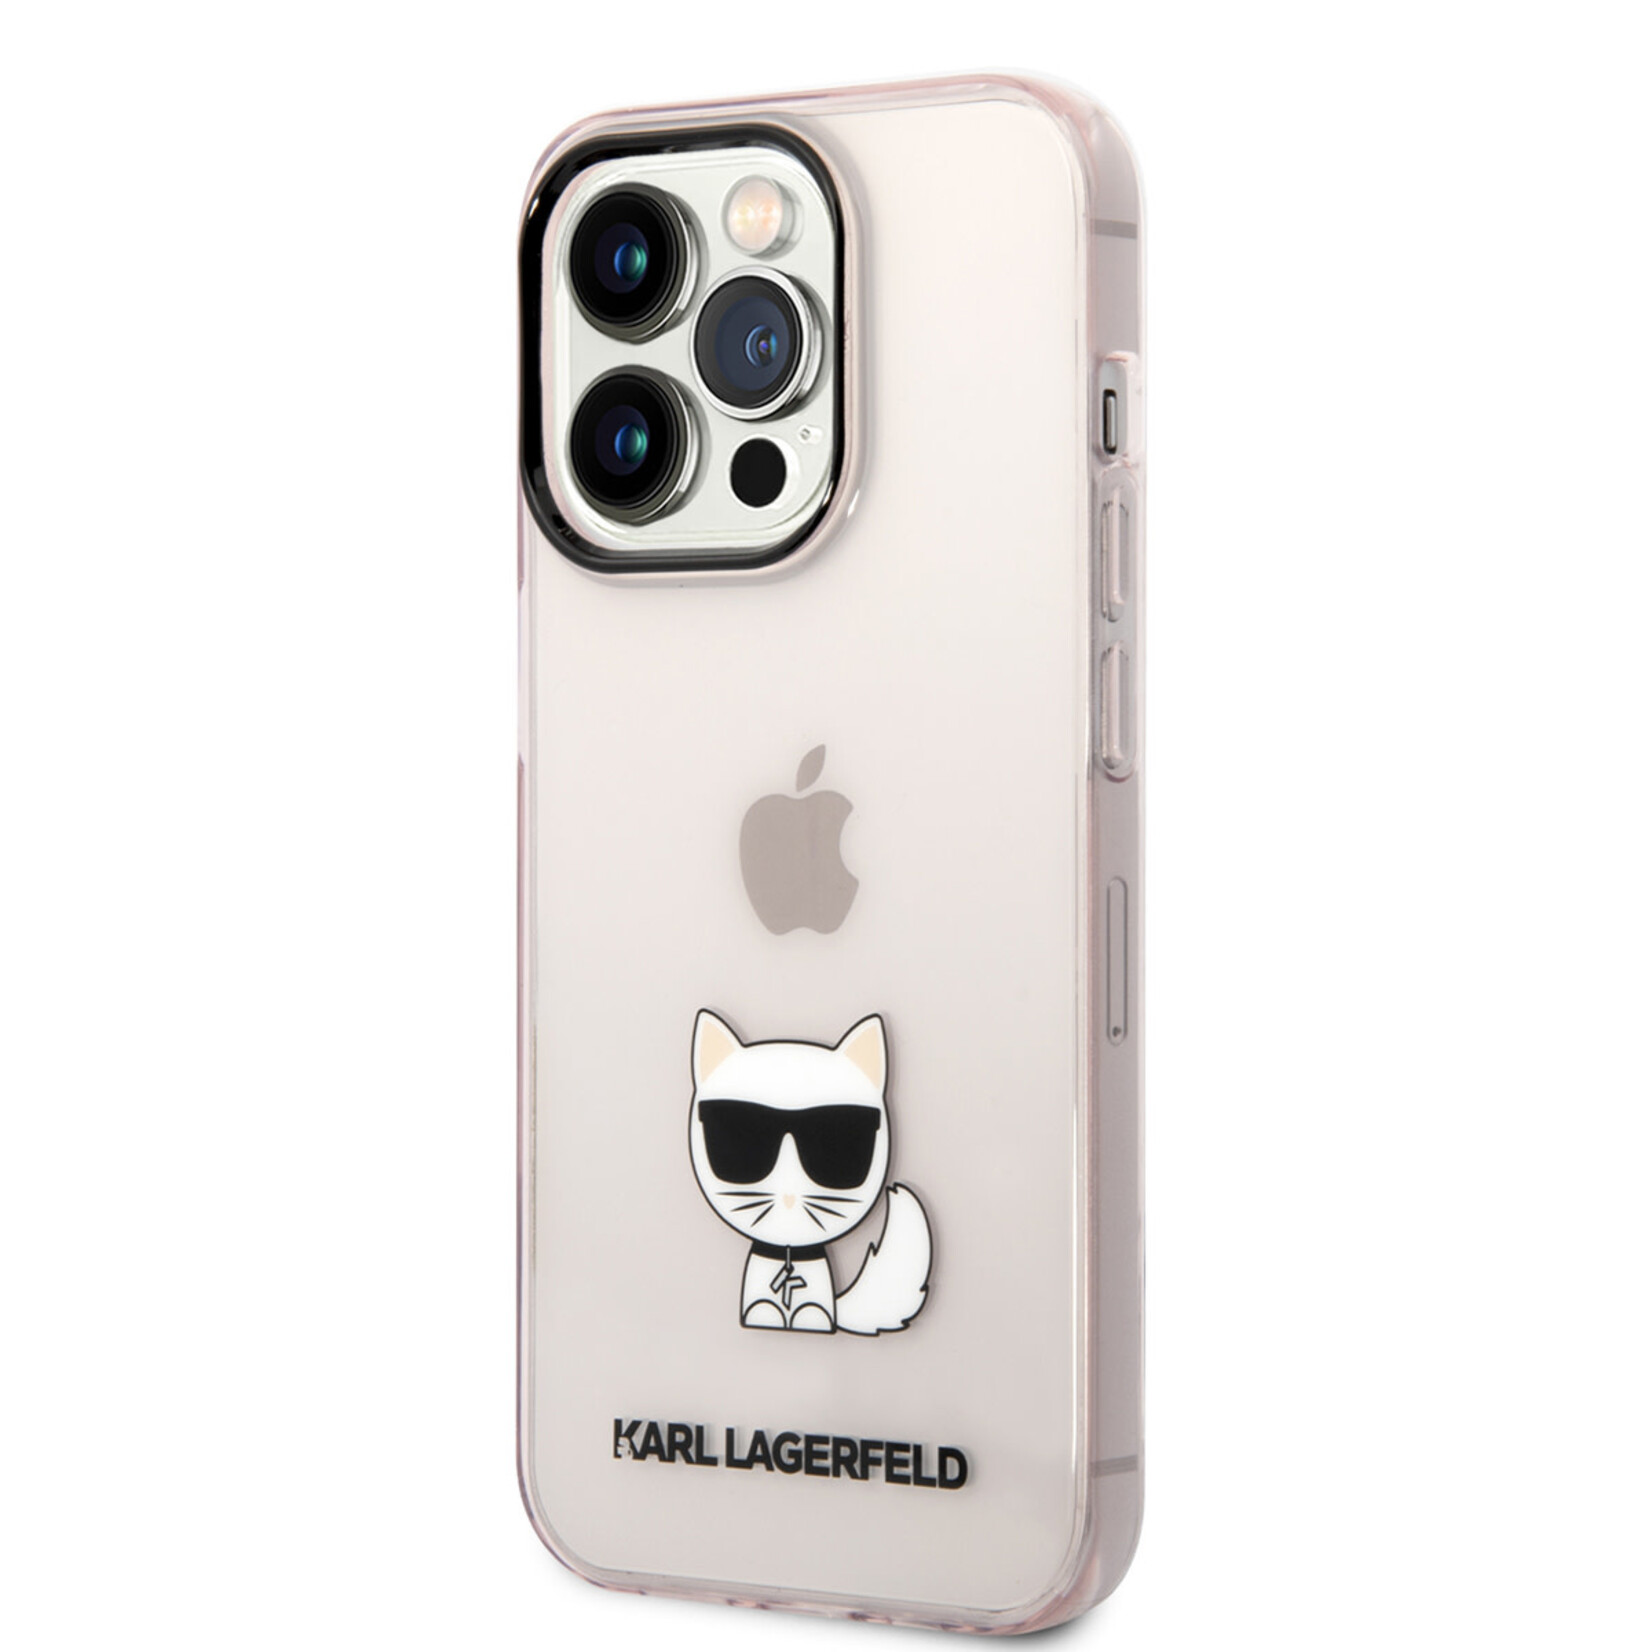 Karl Lagerfeld Karl Lagerfeld iPhone 14 Pro Max TPU Back Cover Hoesje - Roze - Bescherm je Telefoon